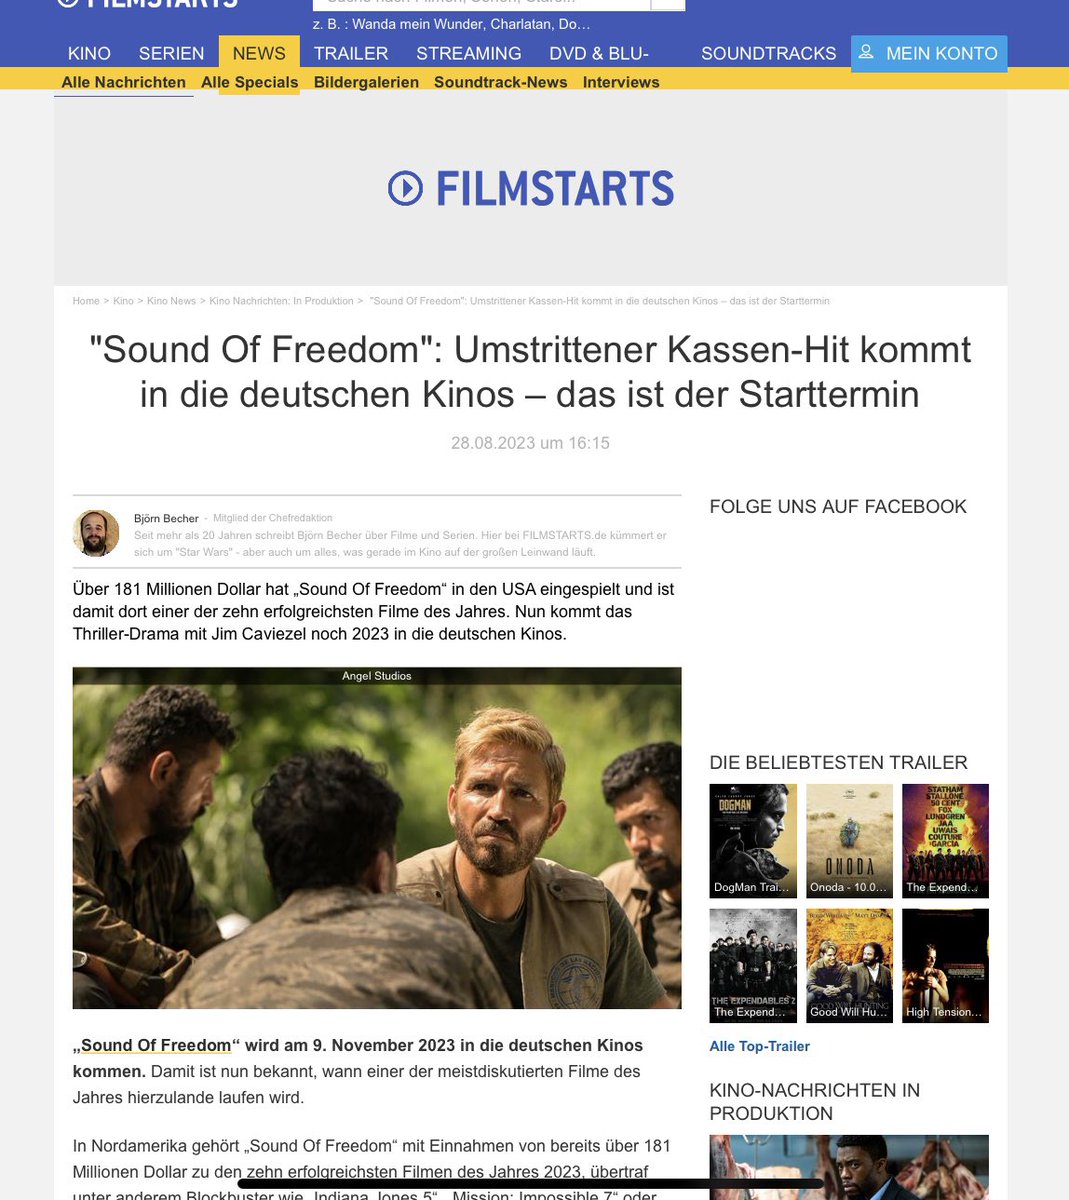 Hier ein Kinotipp
#SoundOfFreedom erscheint in Deutschland.